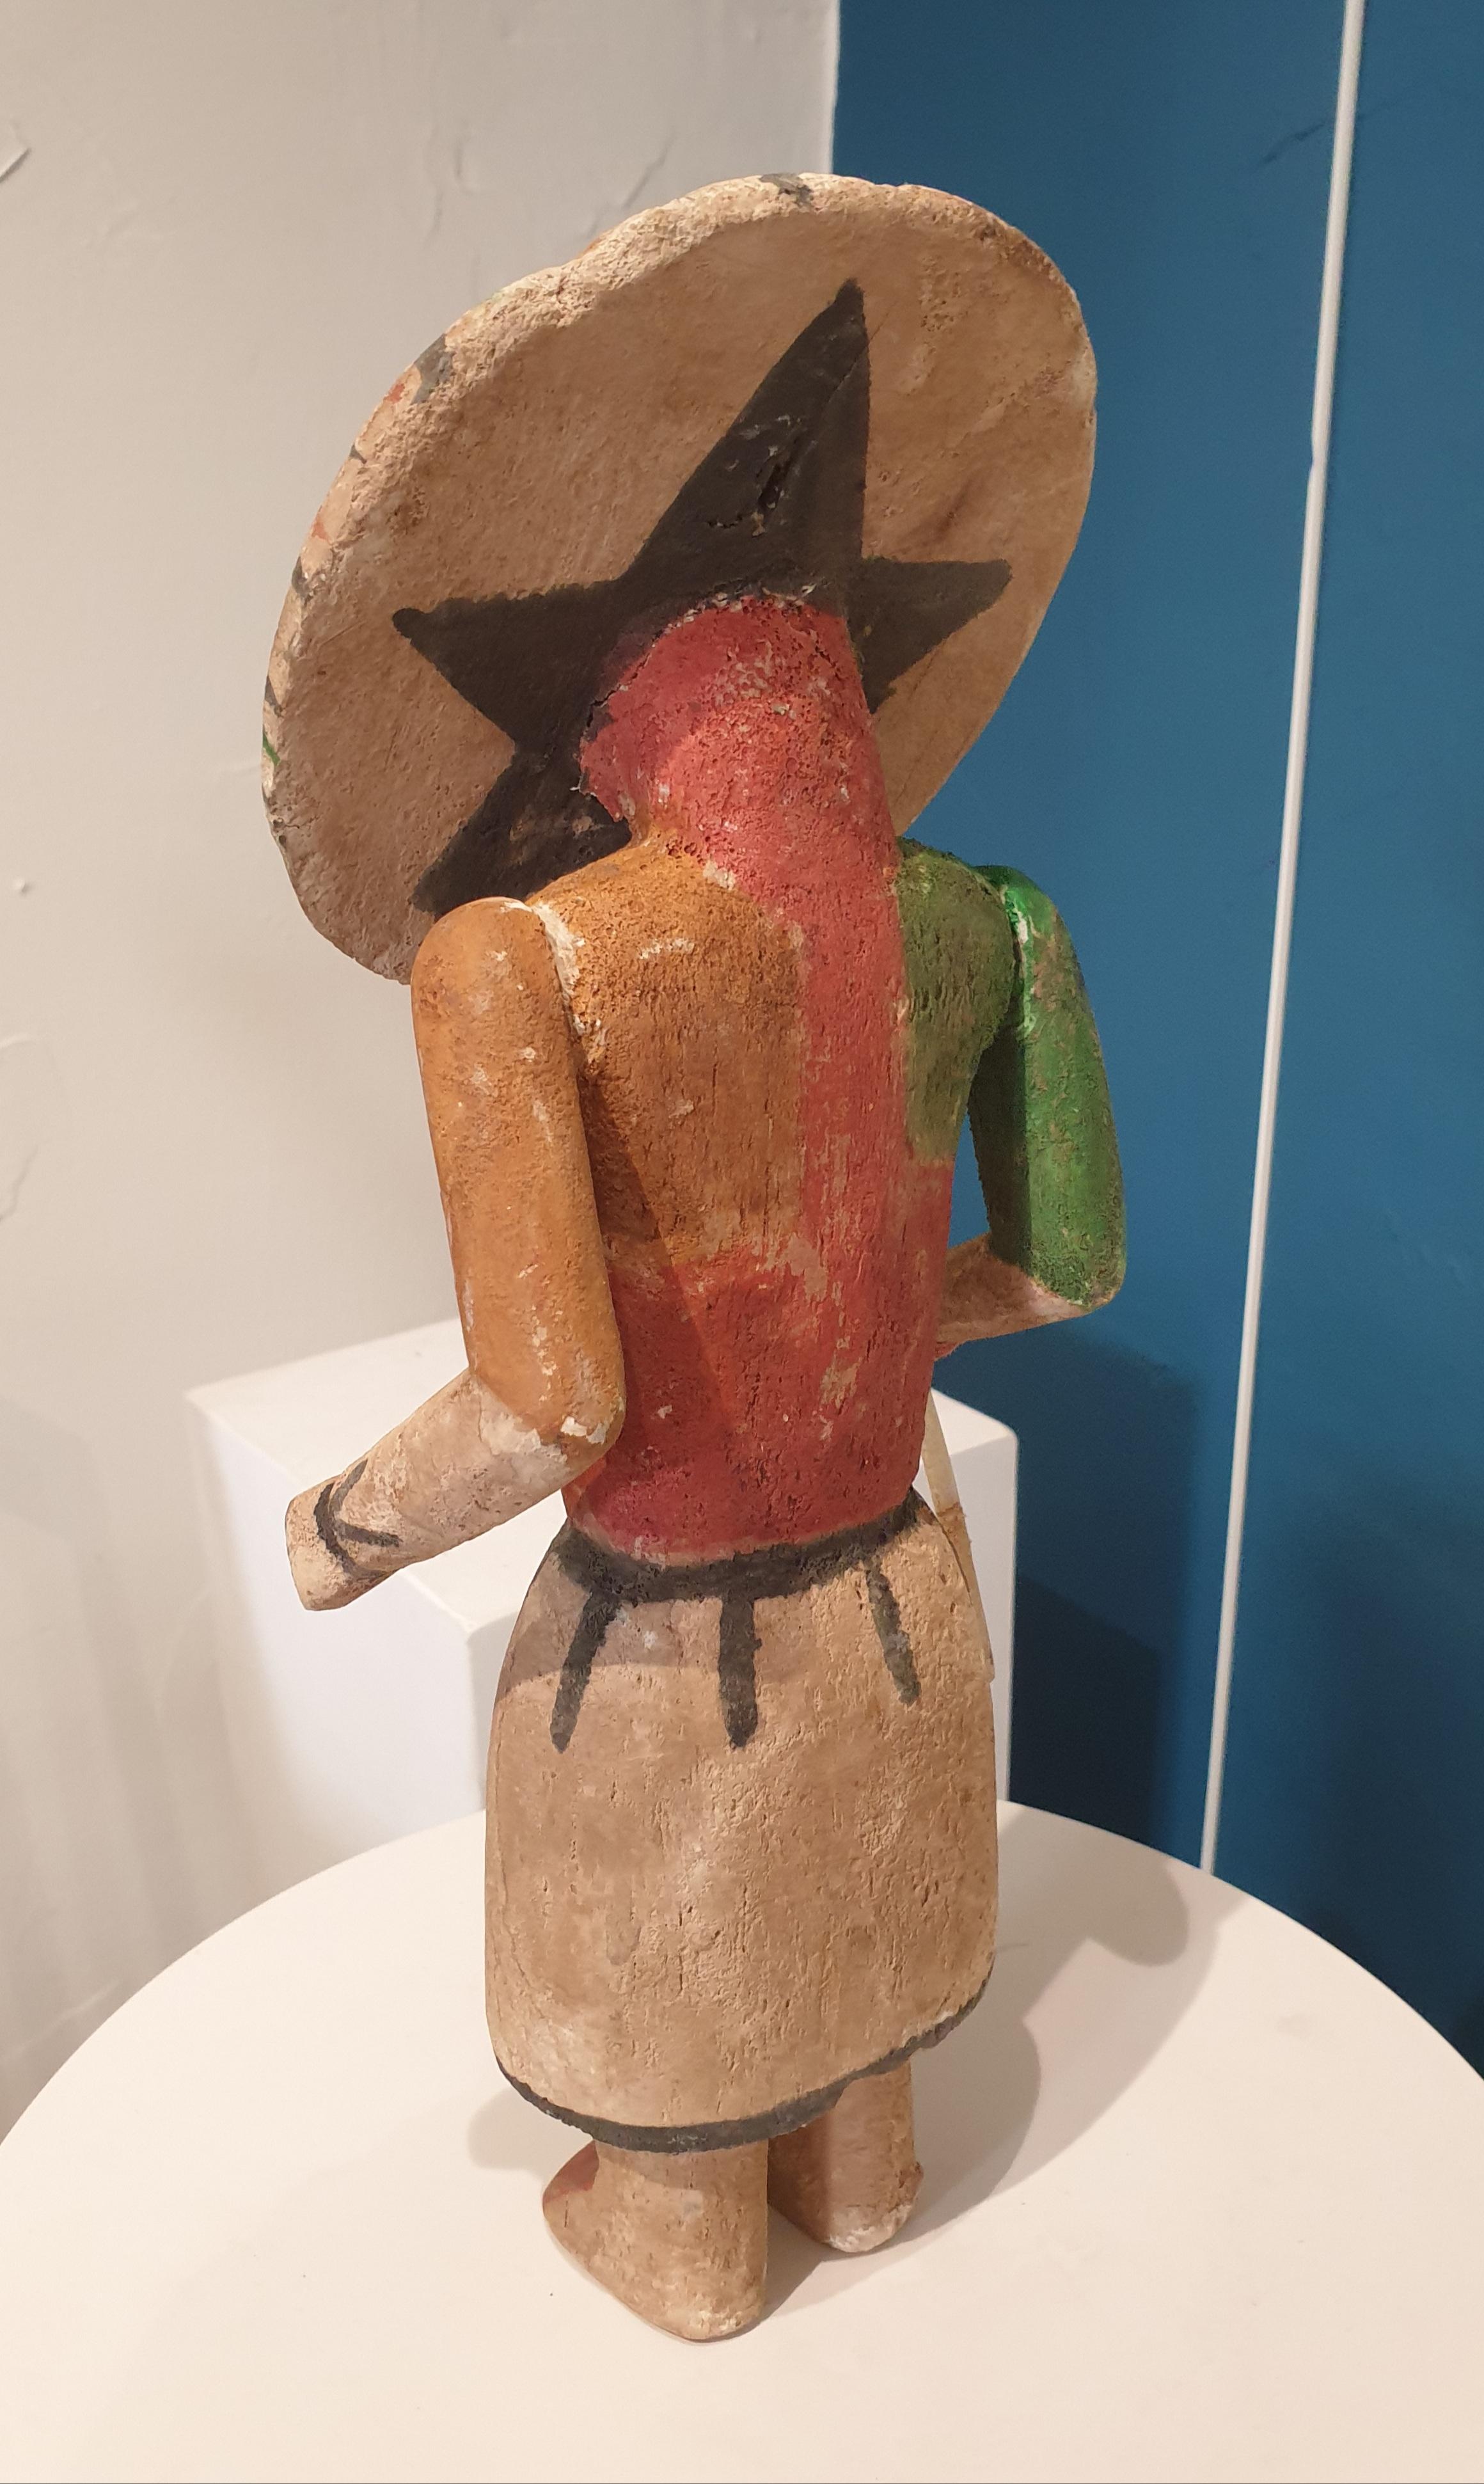 Effigie en bois sculpté, peint et articulé, Hopi Katsina ou poupée Kachina, originaire d'Amérique du Nord.  Cette poupée fait partie d'un groupe de huit poupées, toutes vendues individuellement ou en set, sur 1stdibs.

Les poupées Hopi Katsina sont